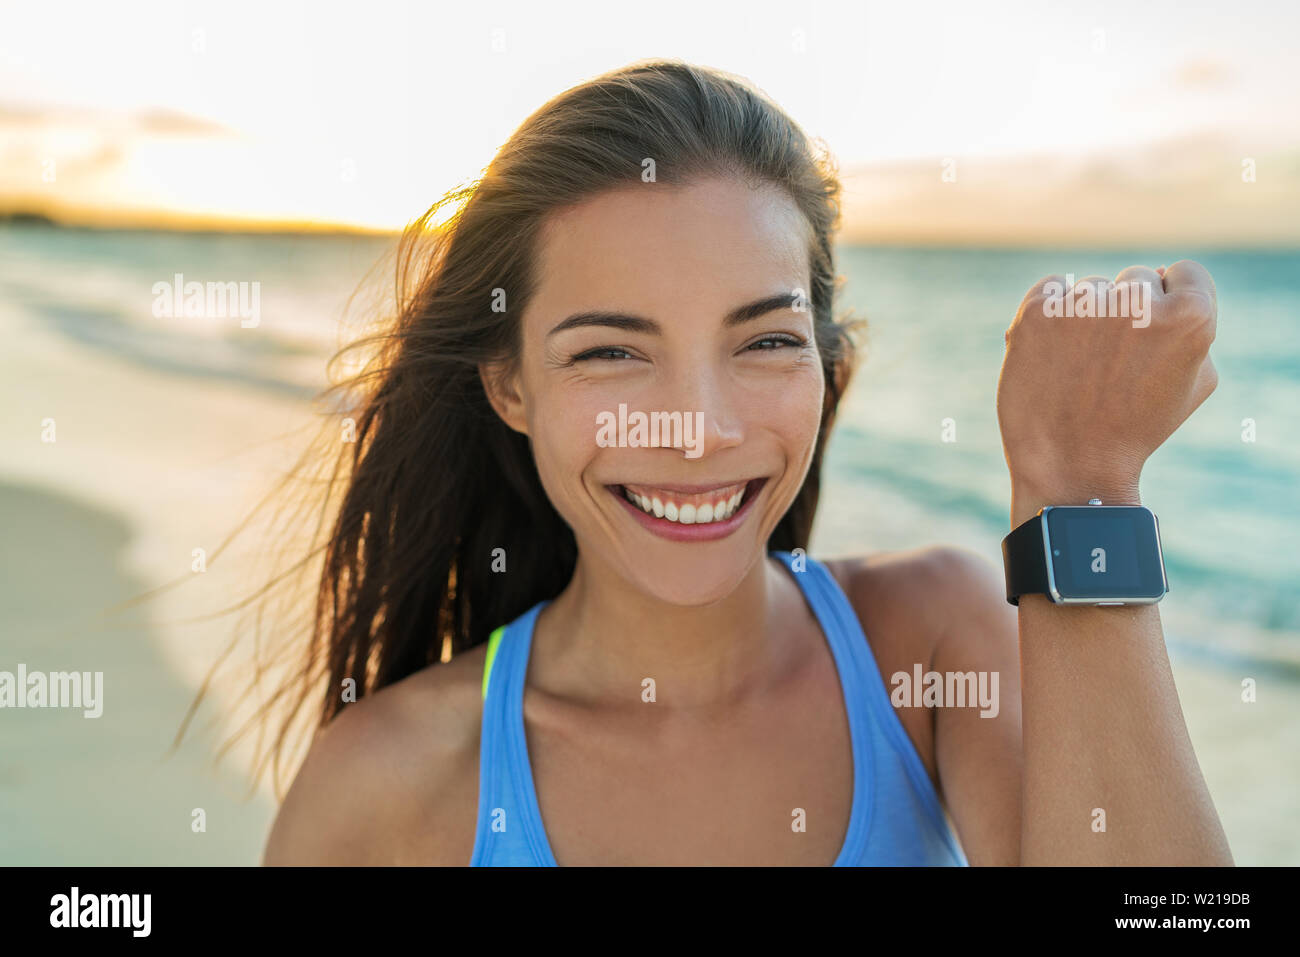 Smartwatch niña alegre que muestra la pantalla de moderno y nuevo reloj inteligente fitness tracker reloj de pulsera. Jóvenes sanos deportiva asiática mujer sonriente en la playa de vacaciones girando al atardecer que viven una vida activa. Foto de stock